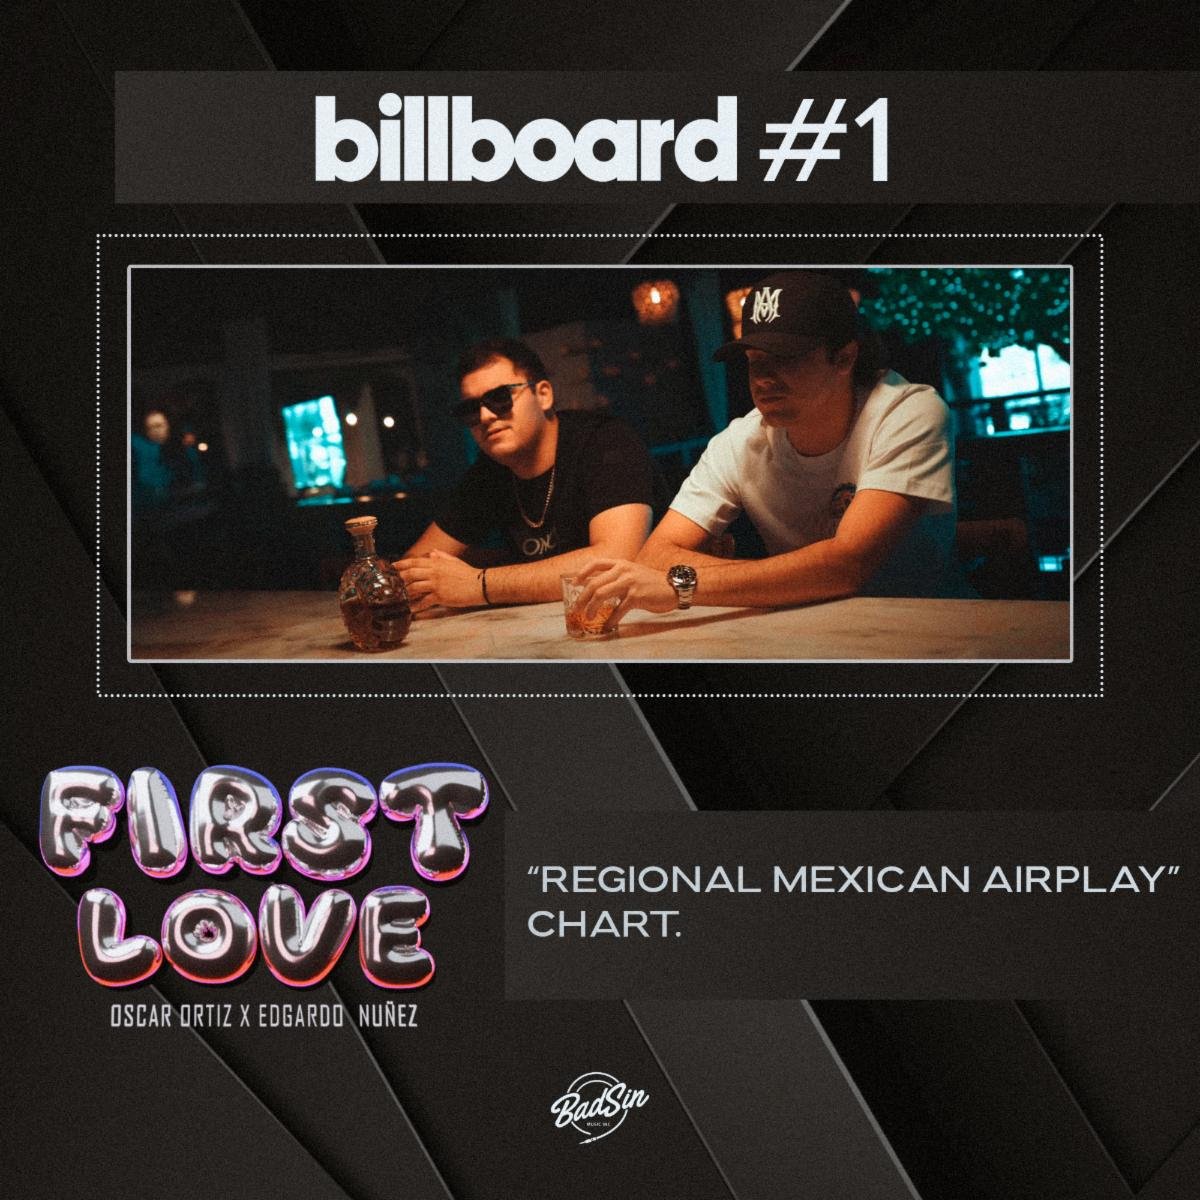 Oscar Ortiz obtiene su primer #1 en la lista "Regional Mexican Airplay" de la revista Billboard con "First Love"